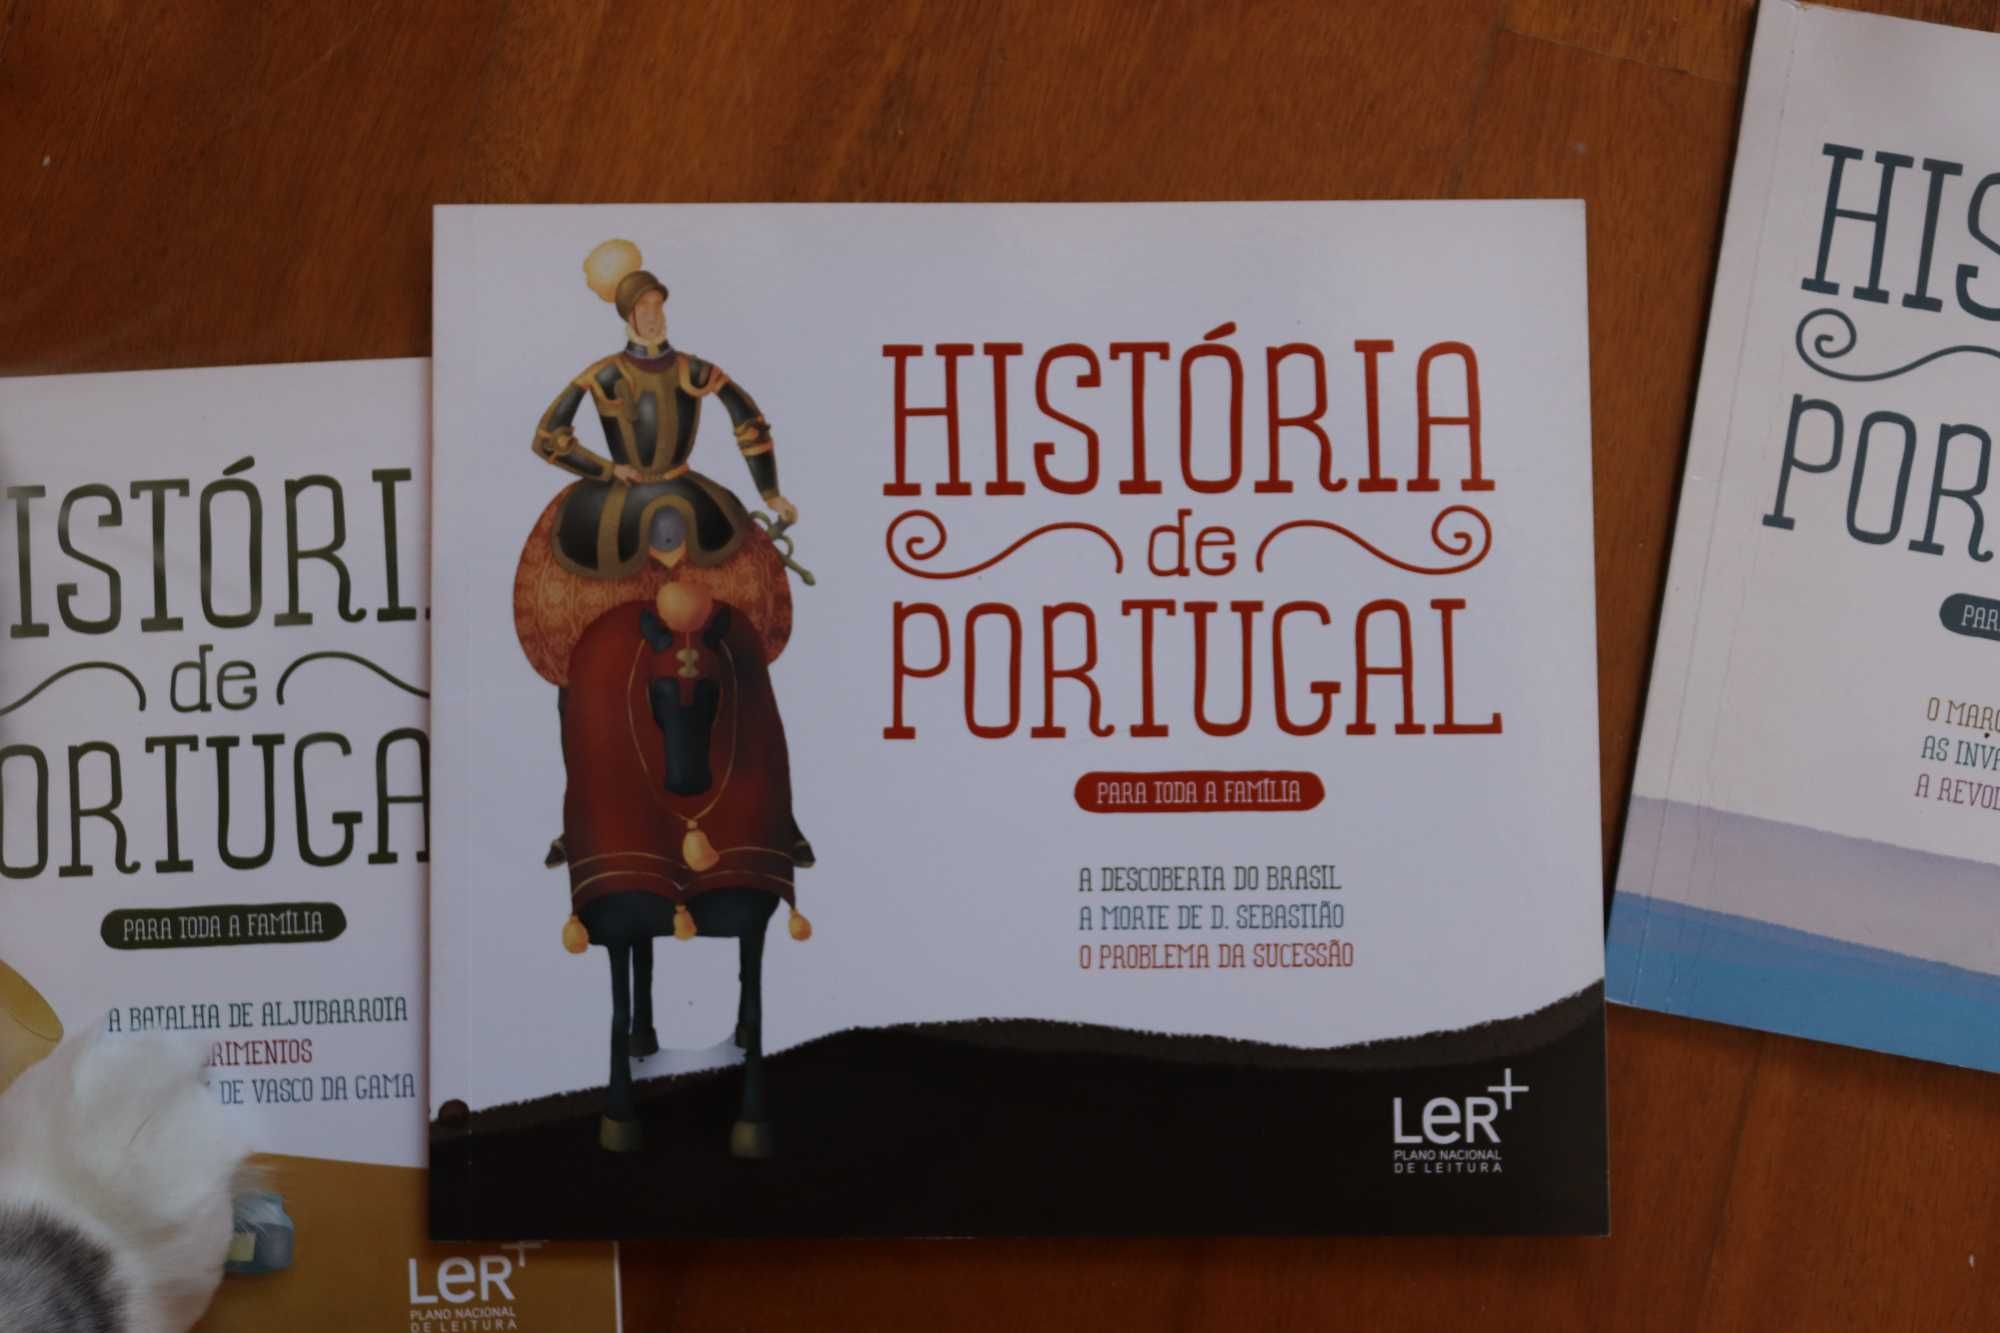 Coleção de livros sobre a História de Portugal